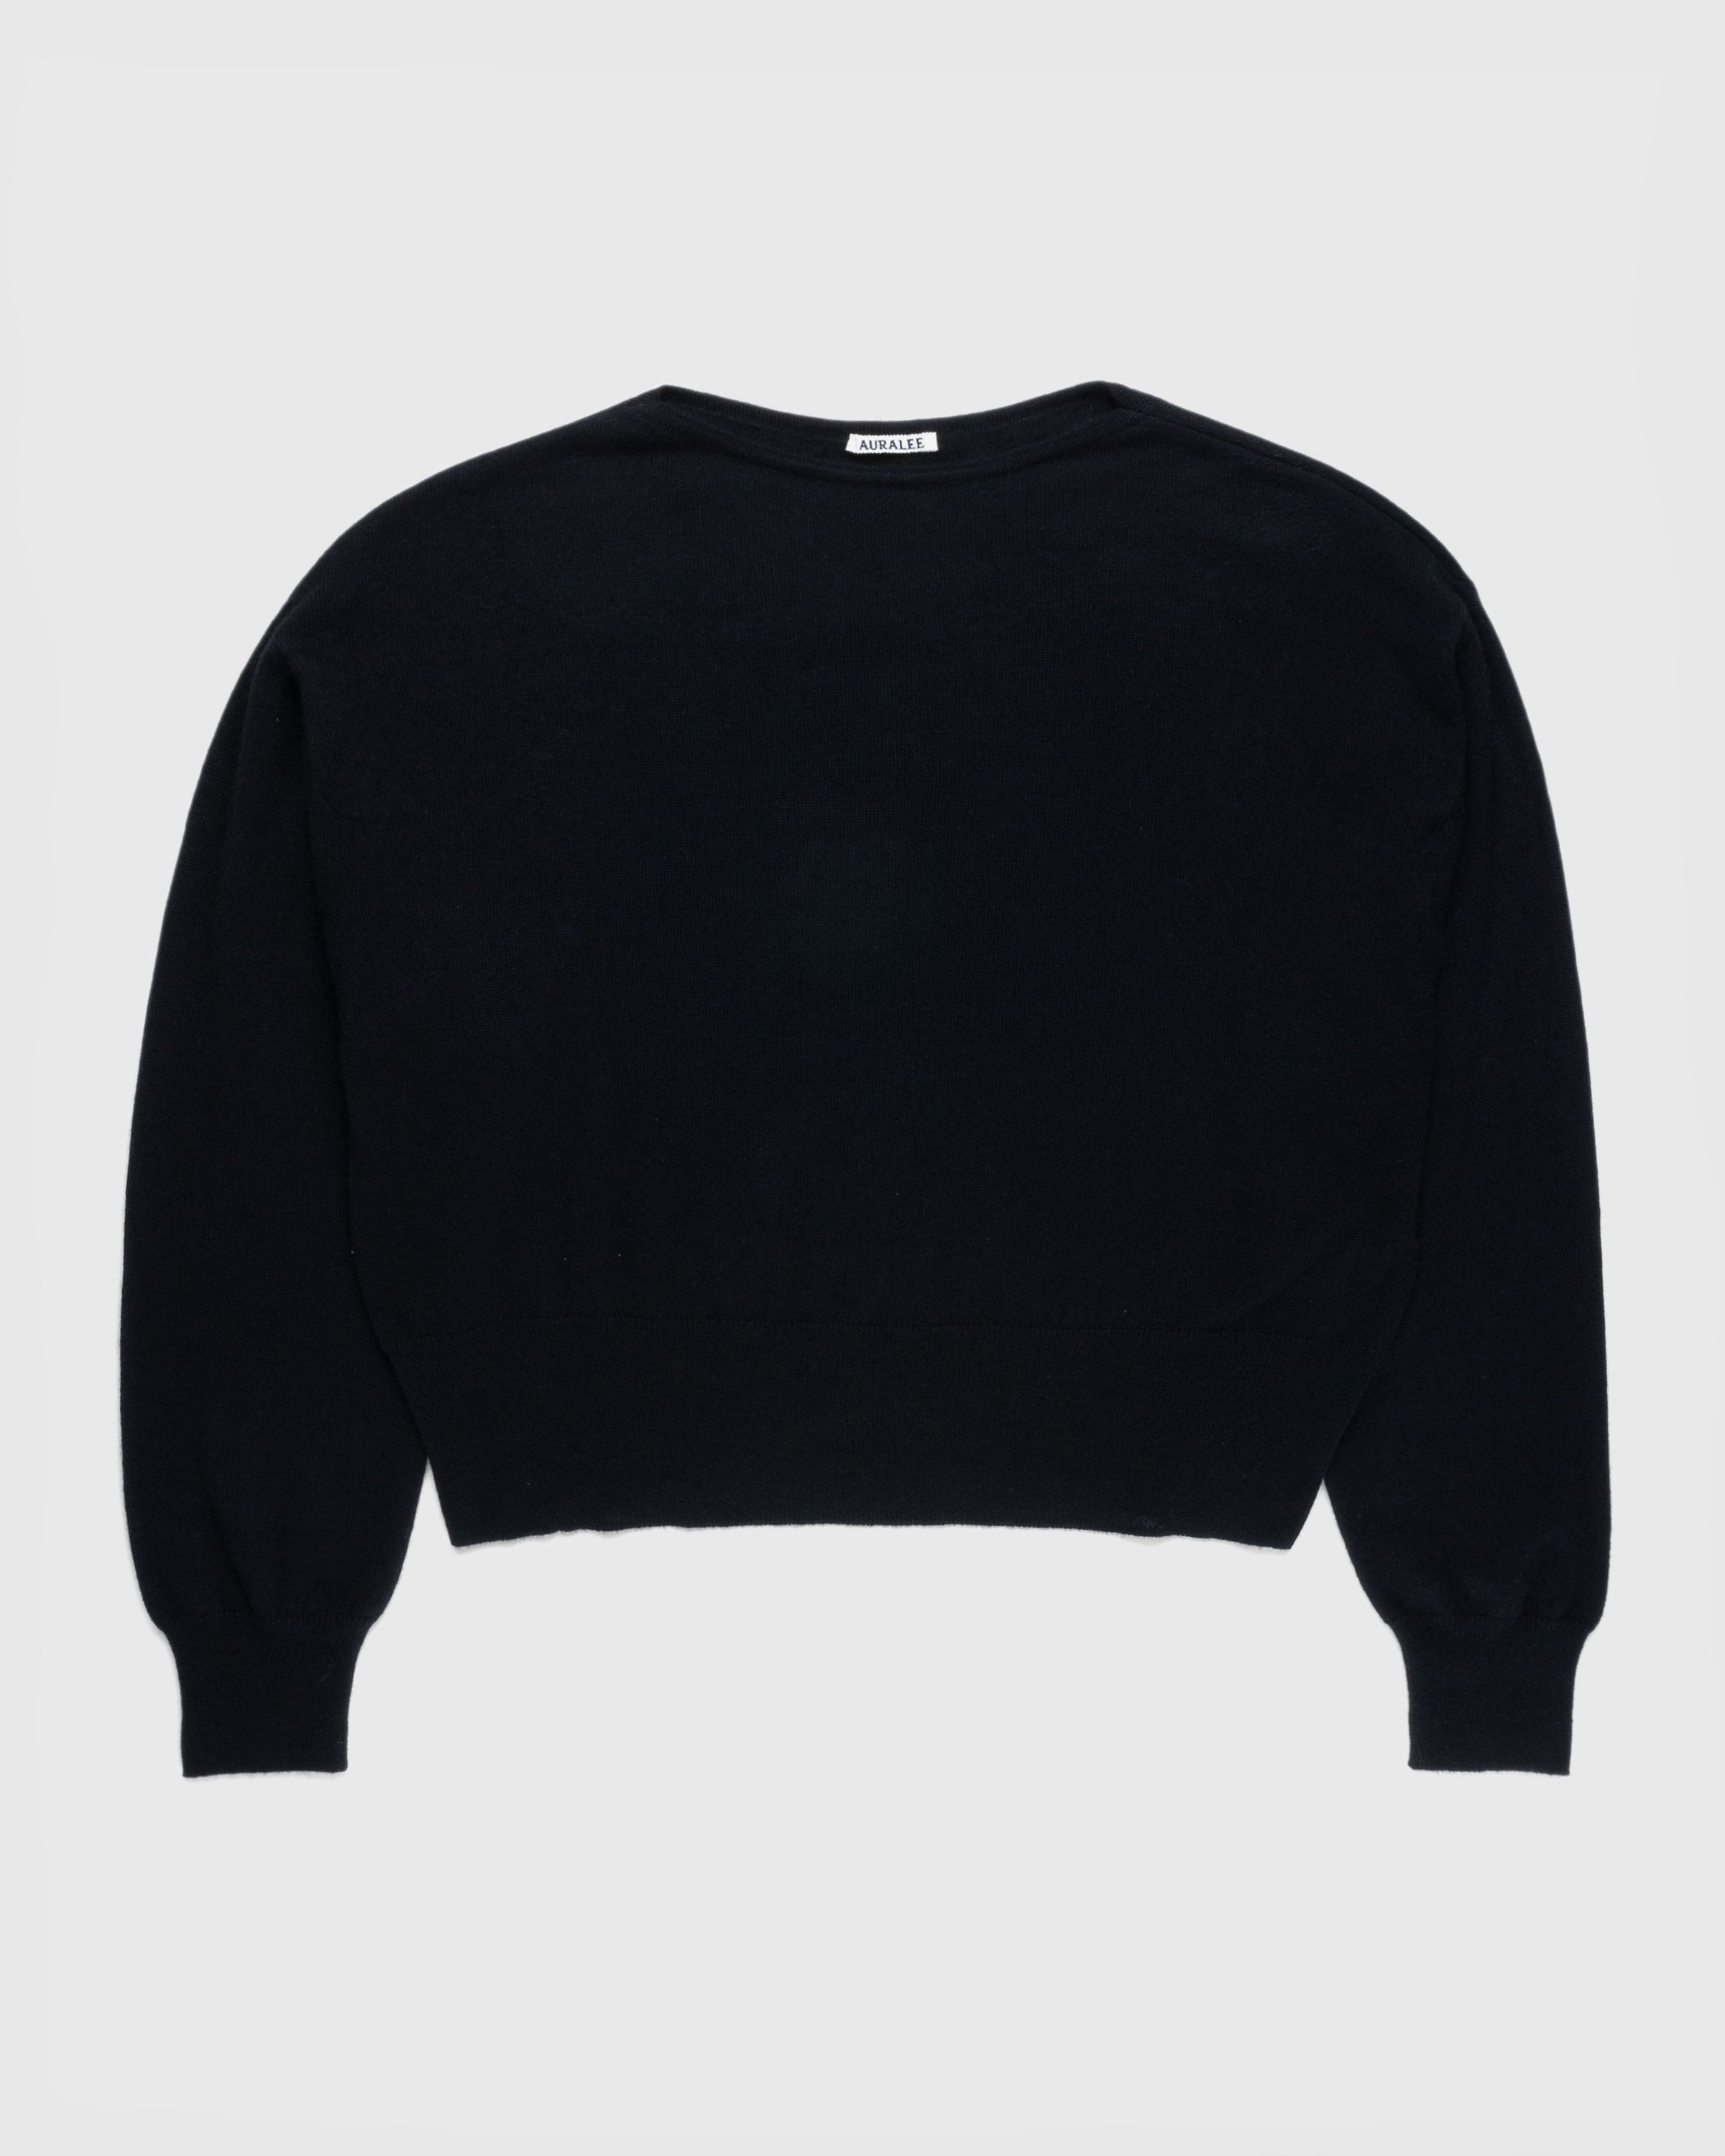 Auralee - Super Fine Cashmere Silk Knit Boat Neck Pullover Black - Clothing - Black - Image 1